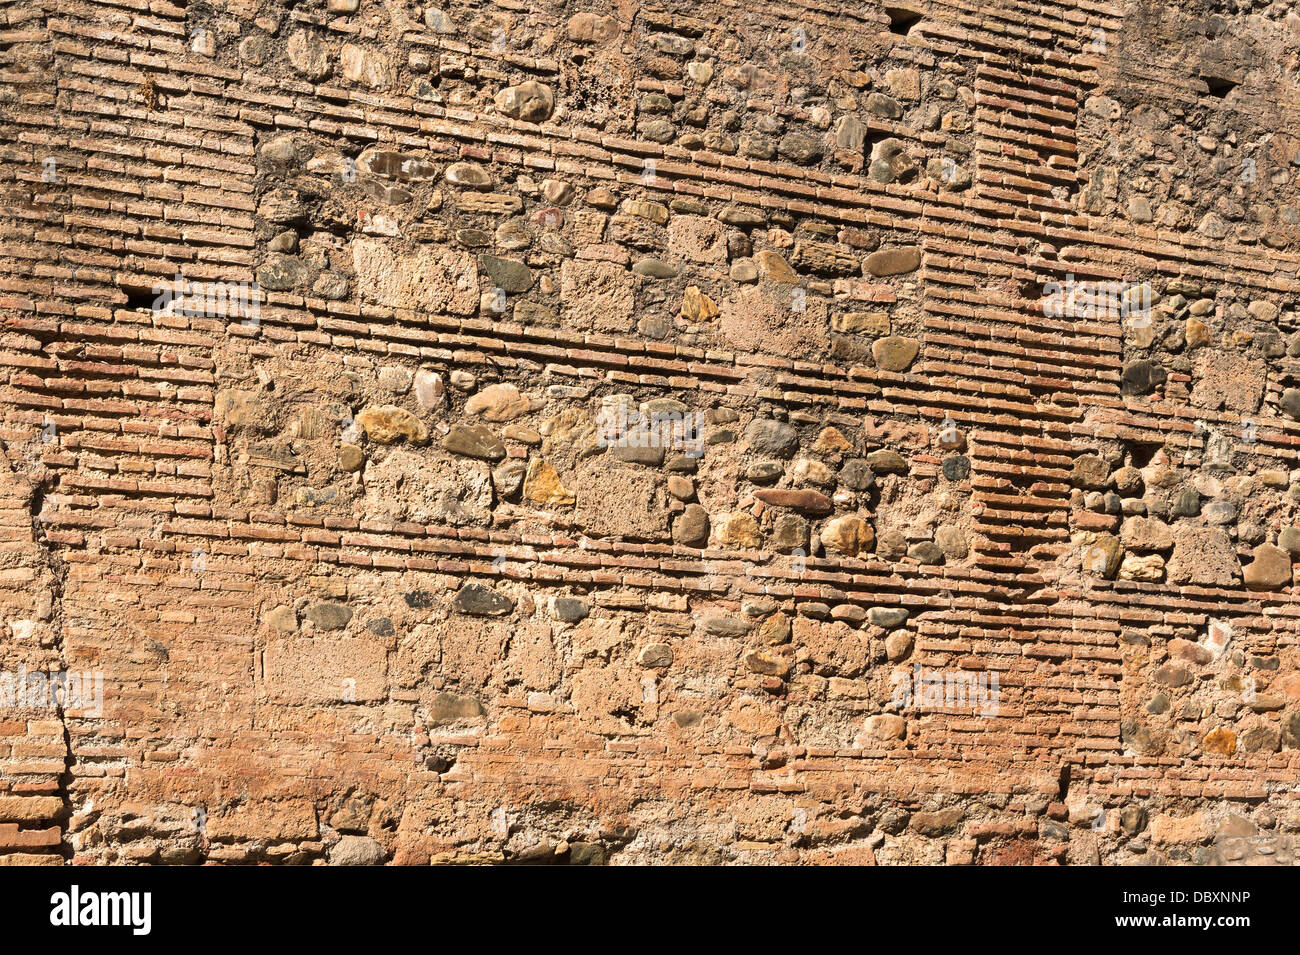 Stichprobe von arabischen Mauerwerk, 13. Jahrhundert, Alhambra, Granada, Spanien. Stockfoto